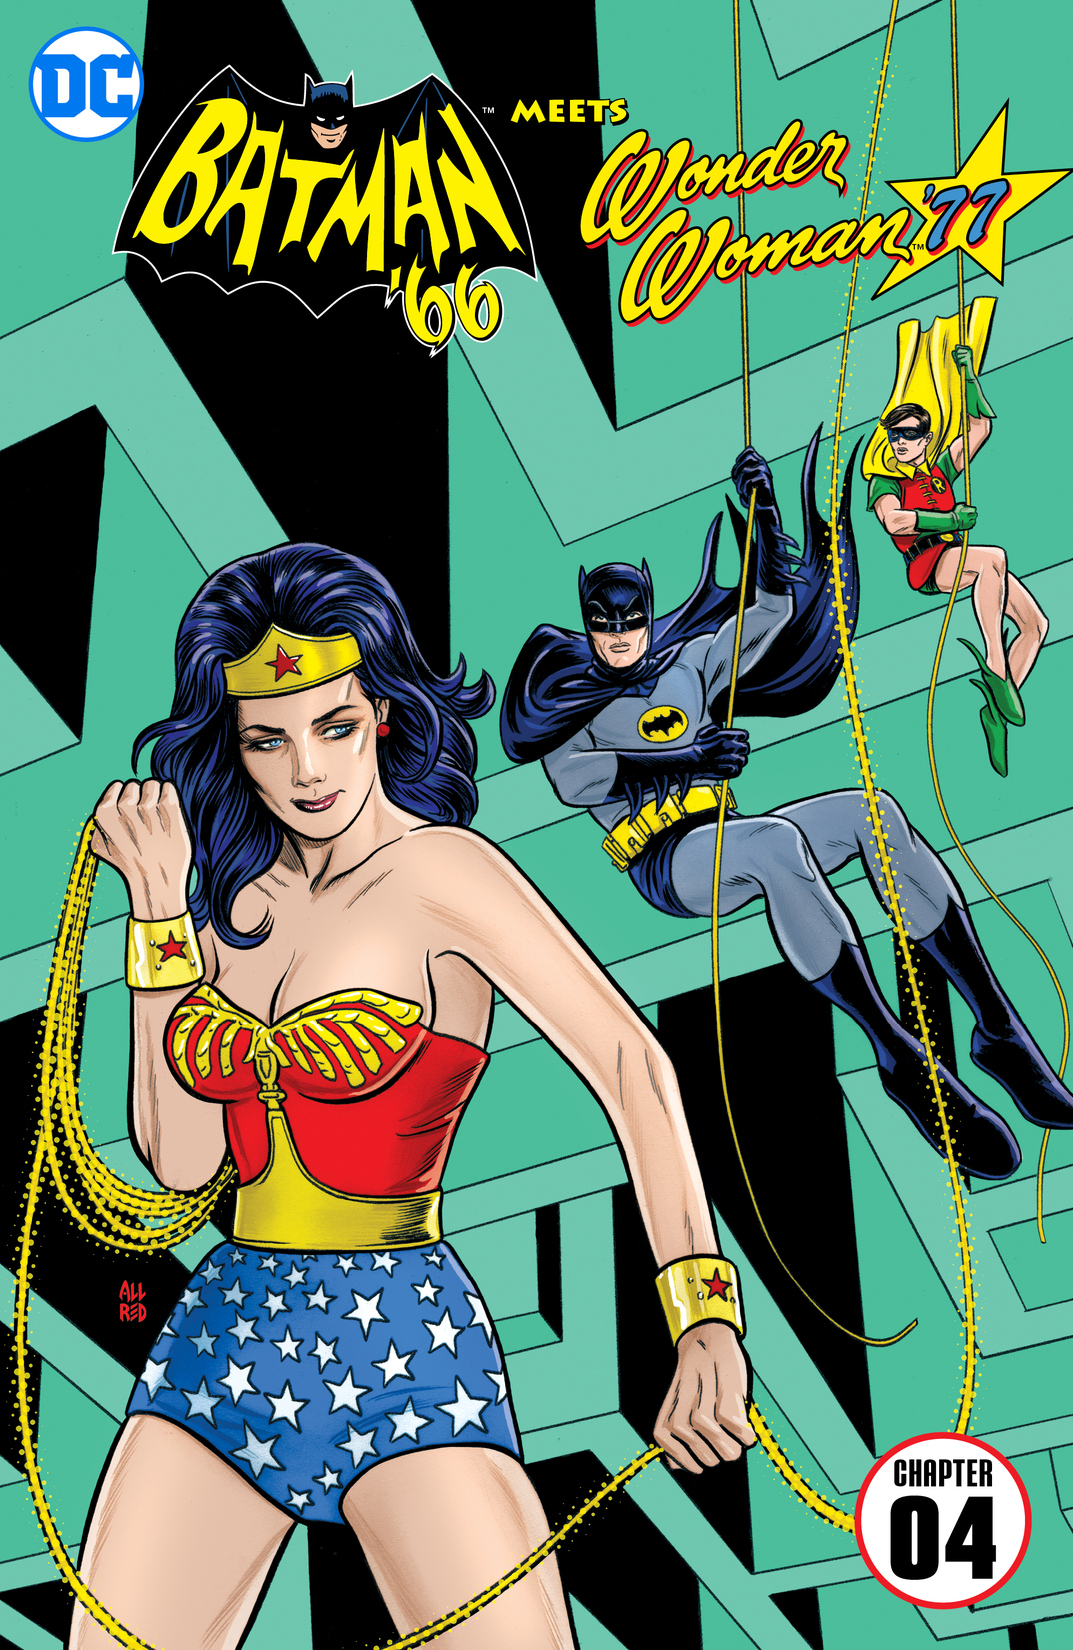 Batman '66 Meets Wonder Woman '77 #4 preview images